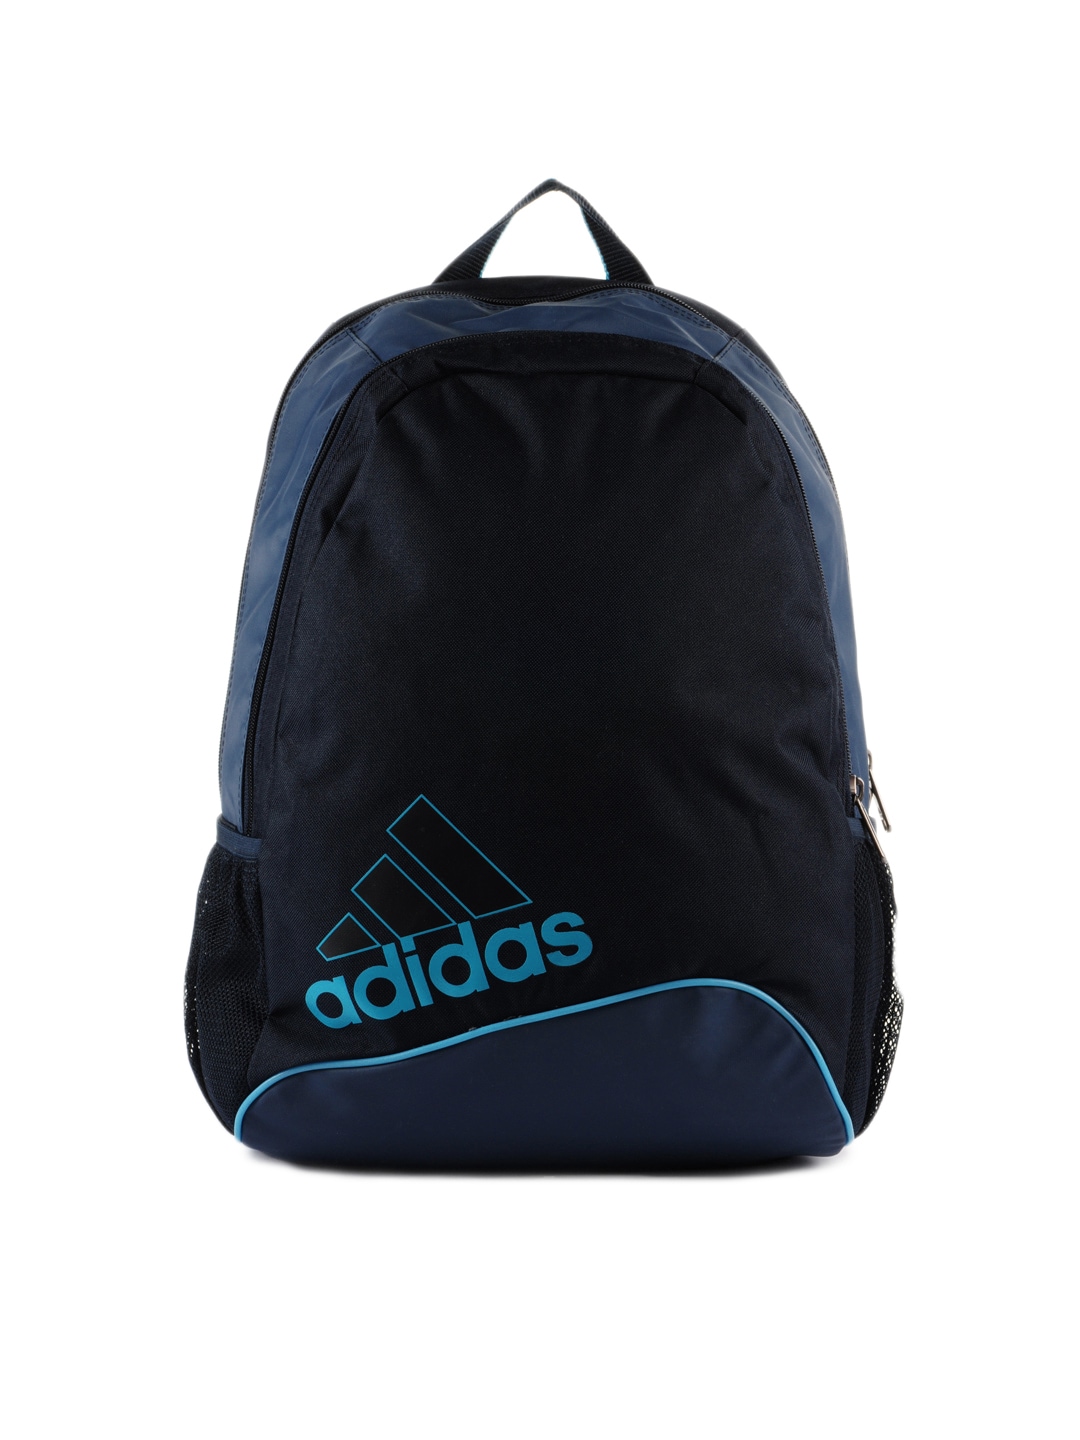 ADIDAS Unisex Blue Backpack